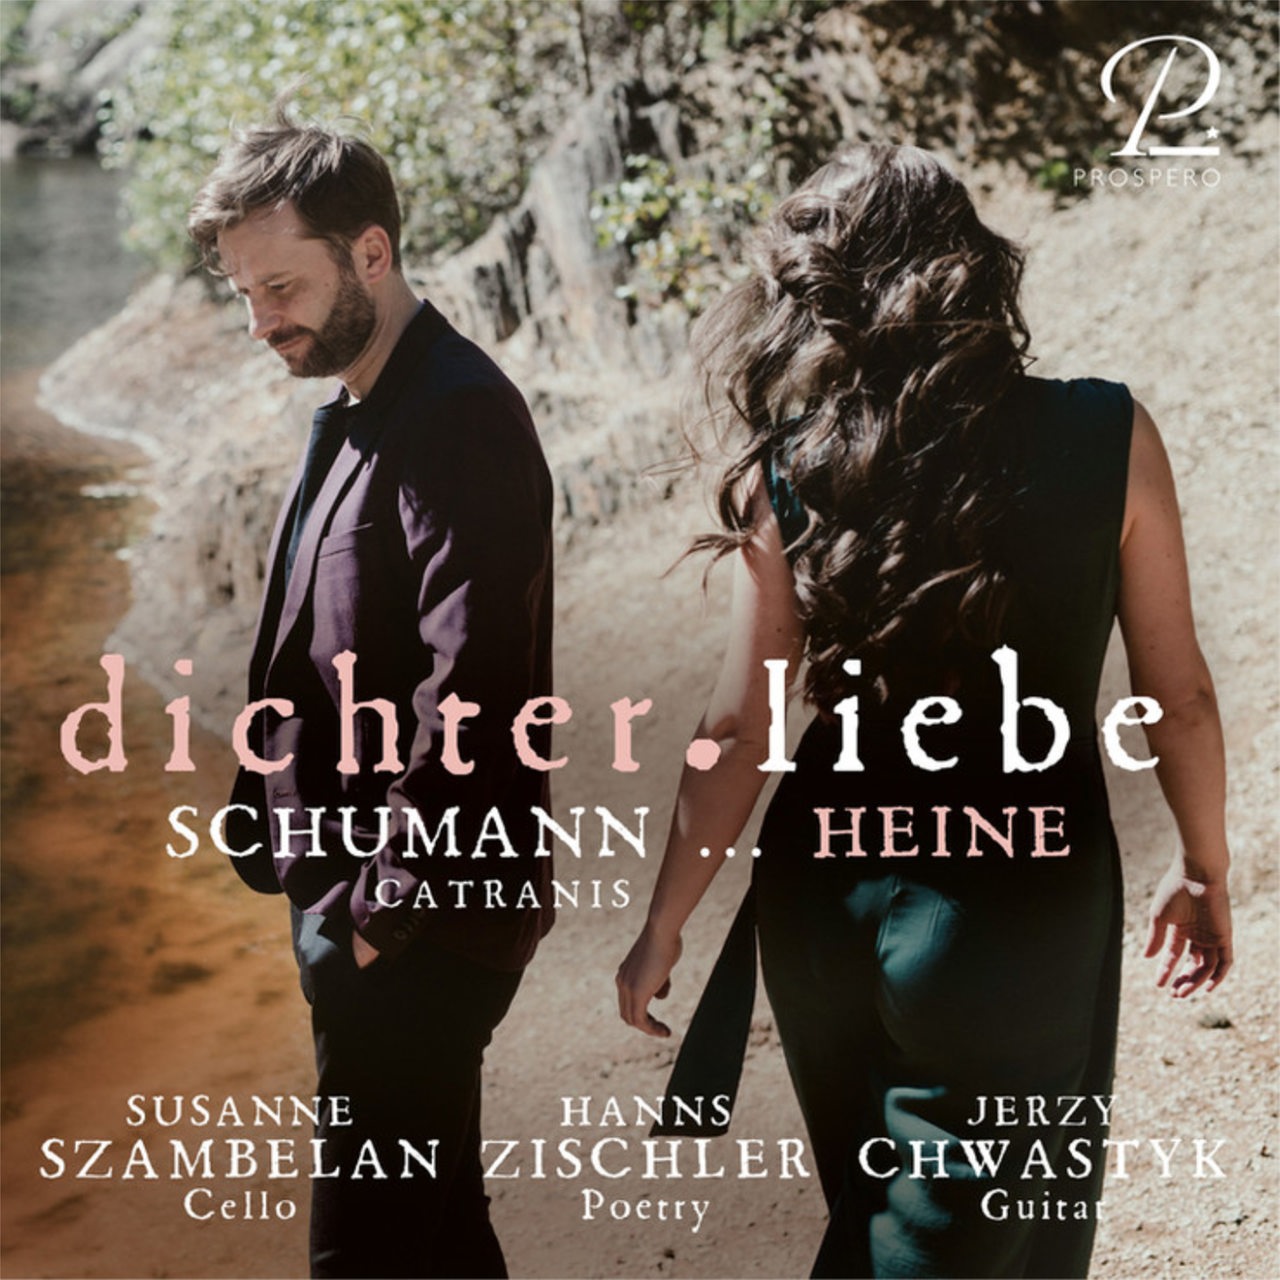 Susanne Szambelan/Jerzy Chwastyk/Hanns Zischler: dichter.liebe, Prospero Classical